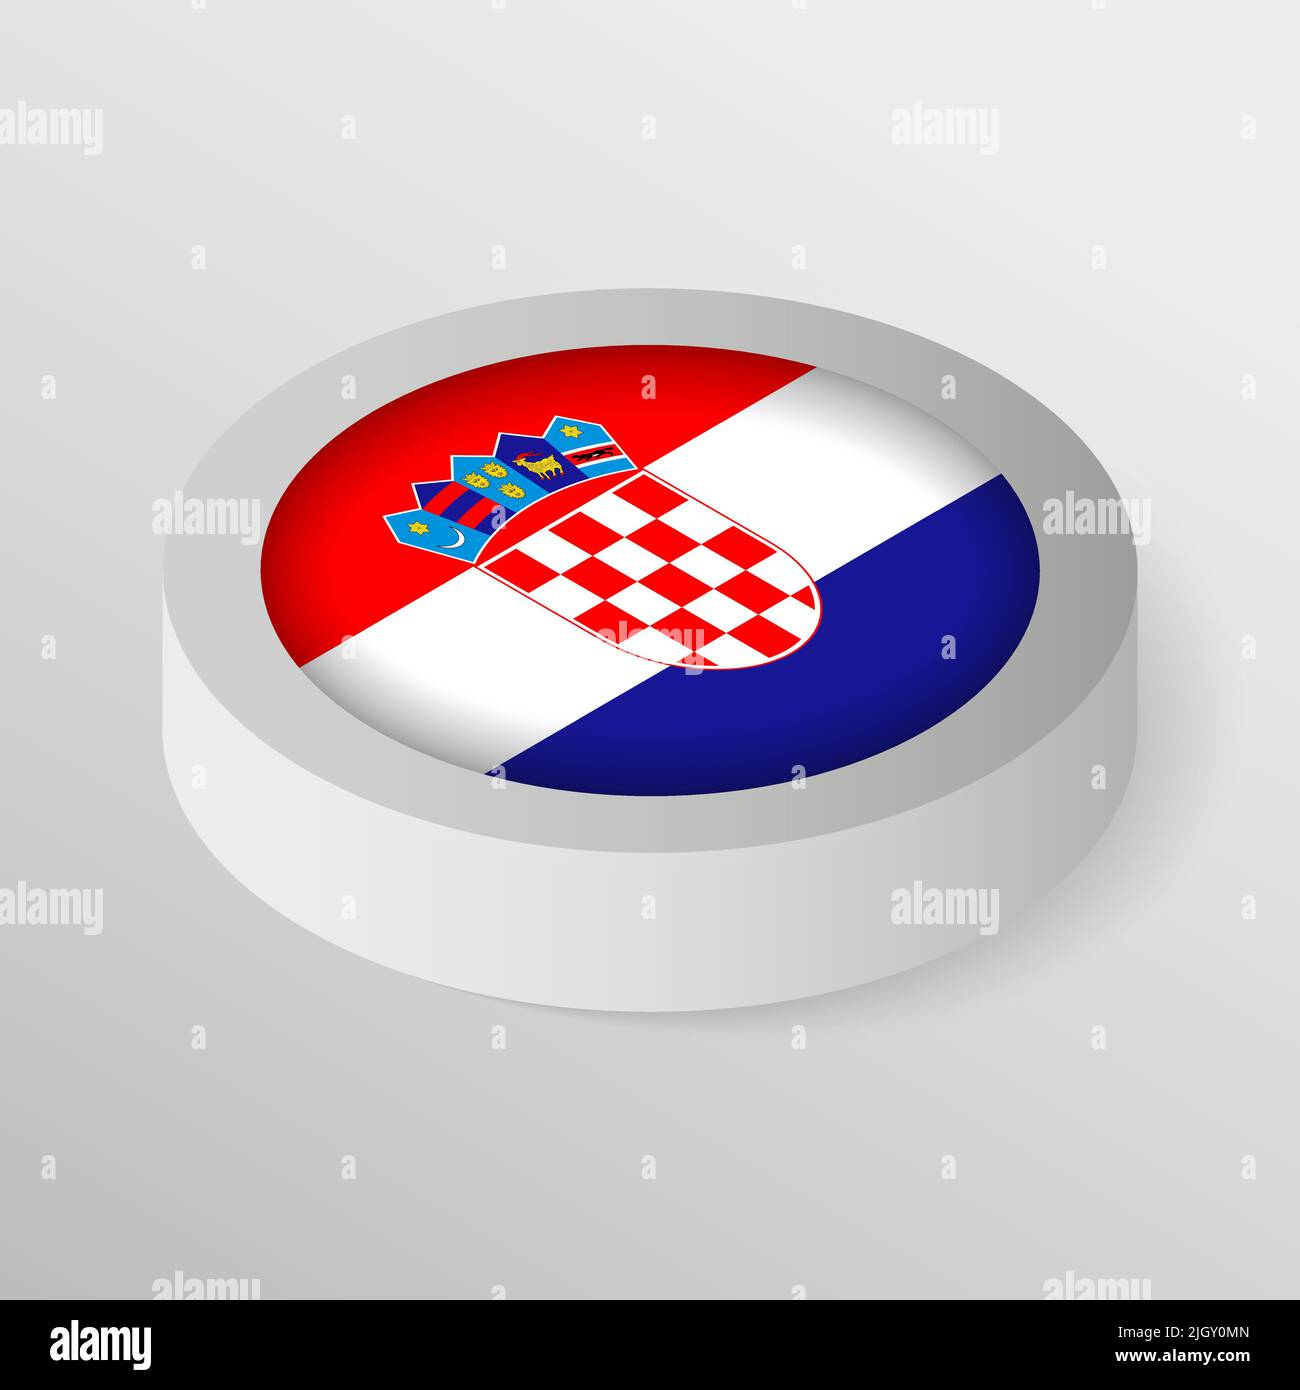 EPS10 bouclier patriotique Vector avec drapeau de la Croatie. Un élément d'impact pour l'utilisation que vous voulez en faire. Illustration de Vecteur